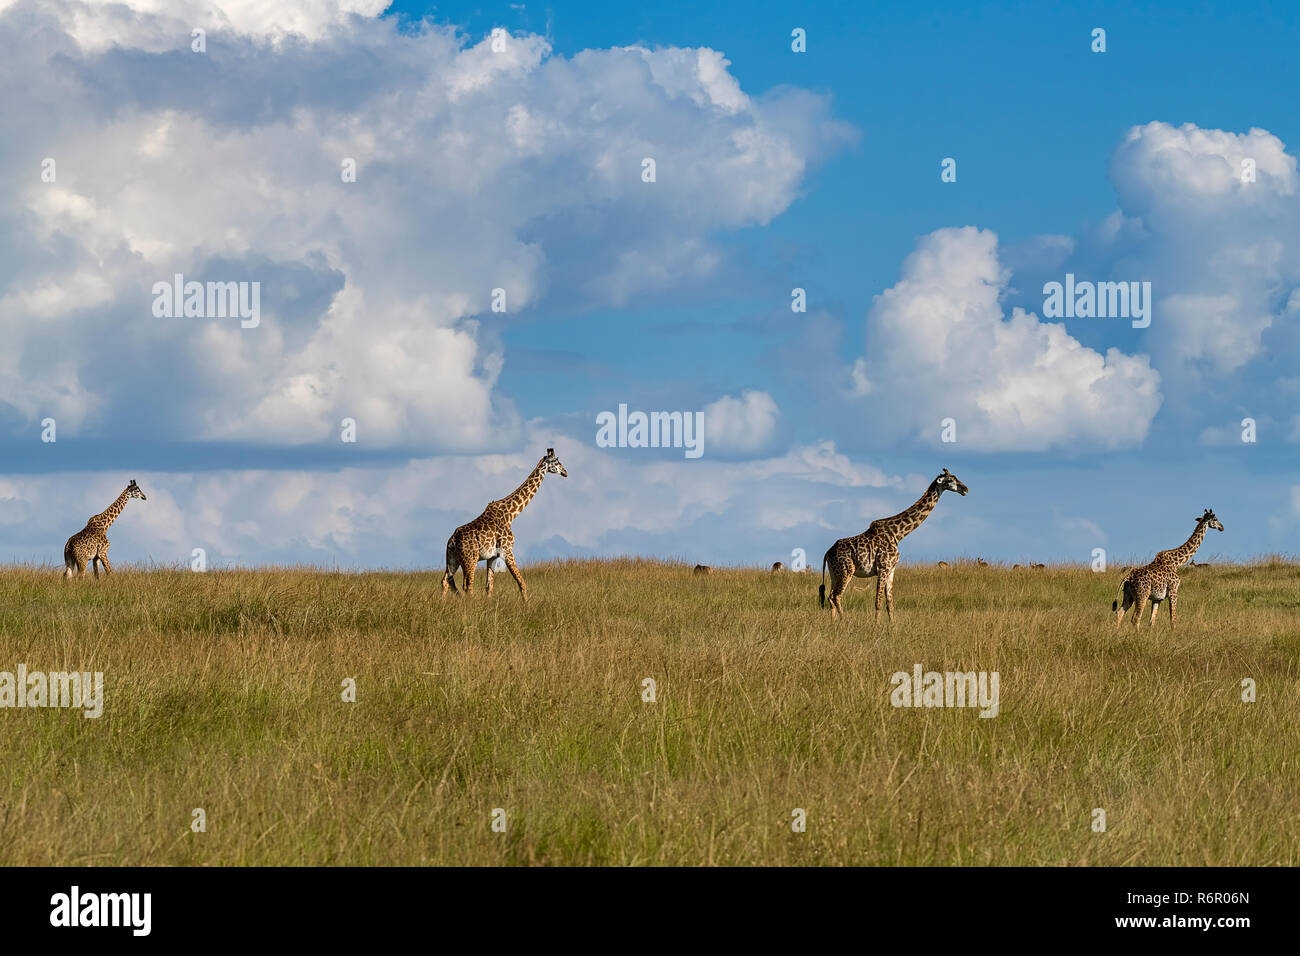 Giraffen (Giraffa camelopardalis), Herde Lévis 2004-2005 uft durch die Savanne, Masai Mara, Kenya Banque D'Images